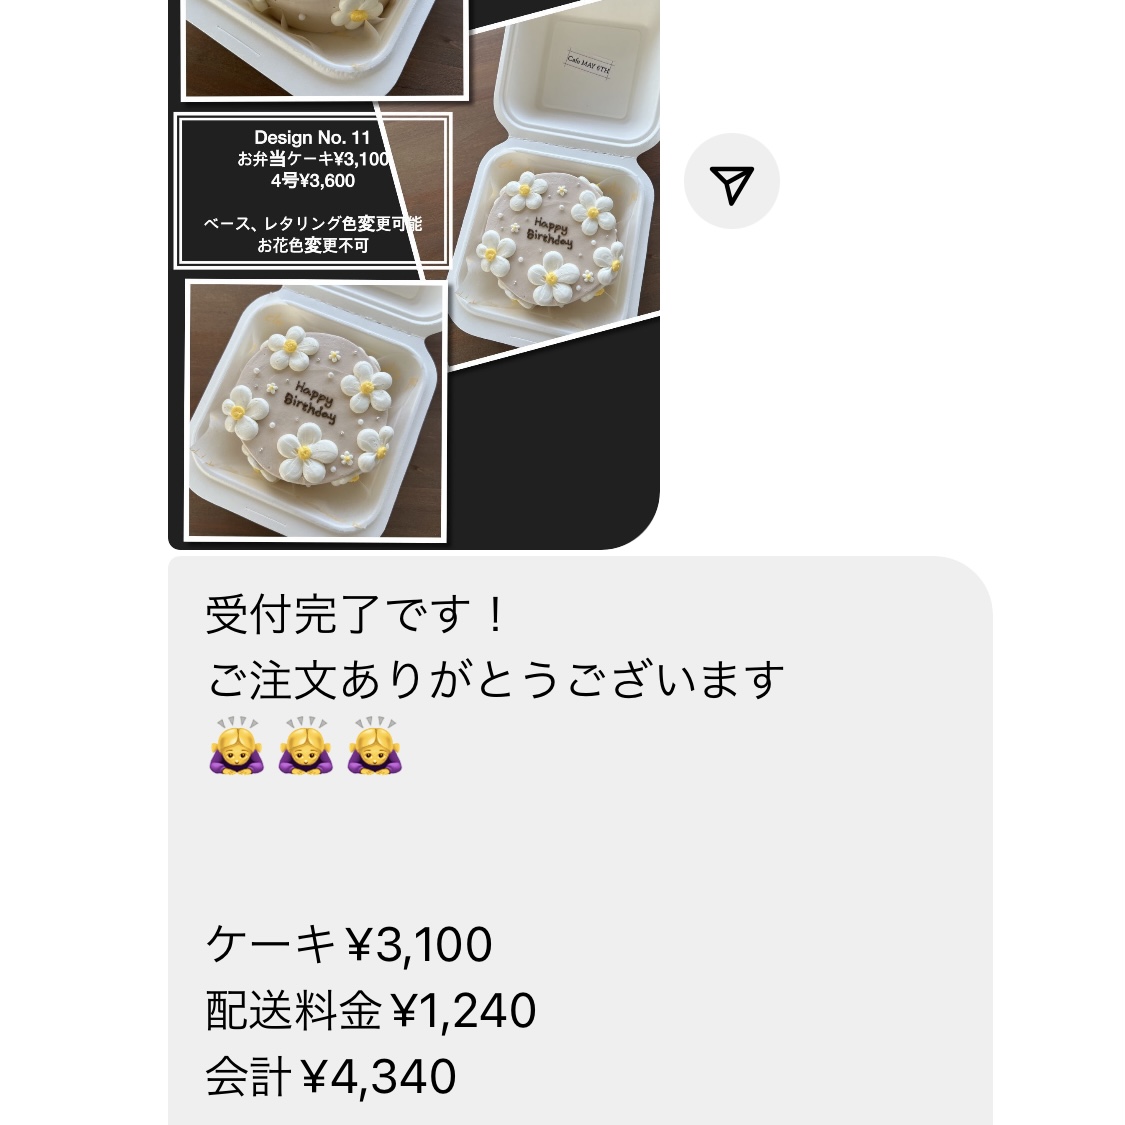 Cafe May 6th 大阪 センイルケーキ お弁当ケーキ　注文方法